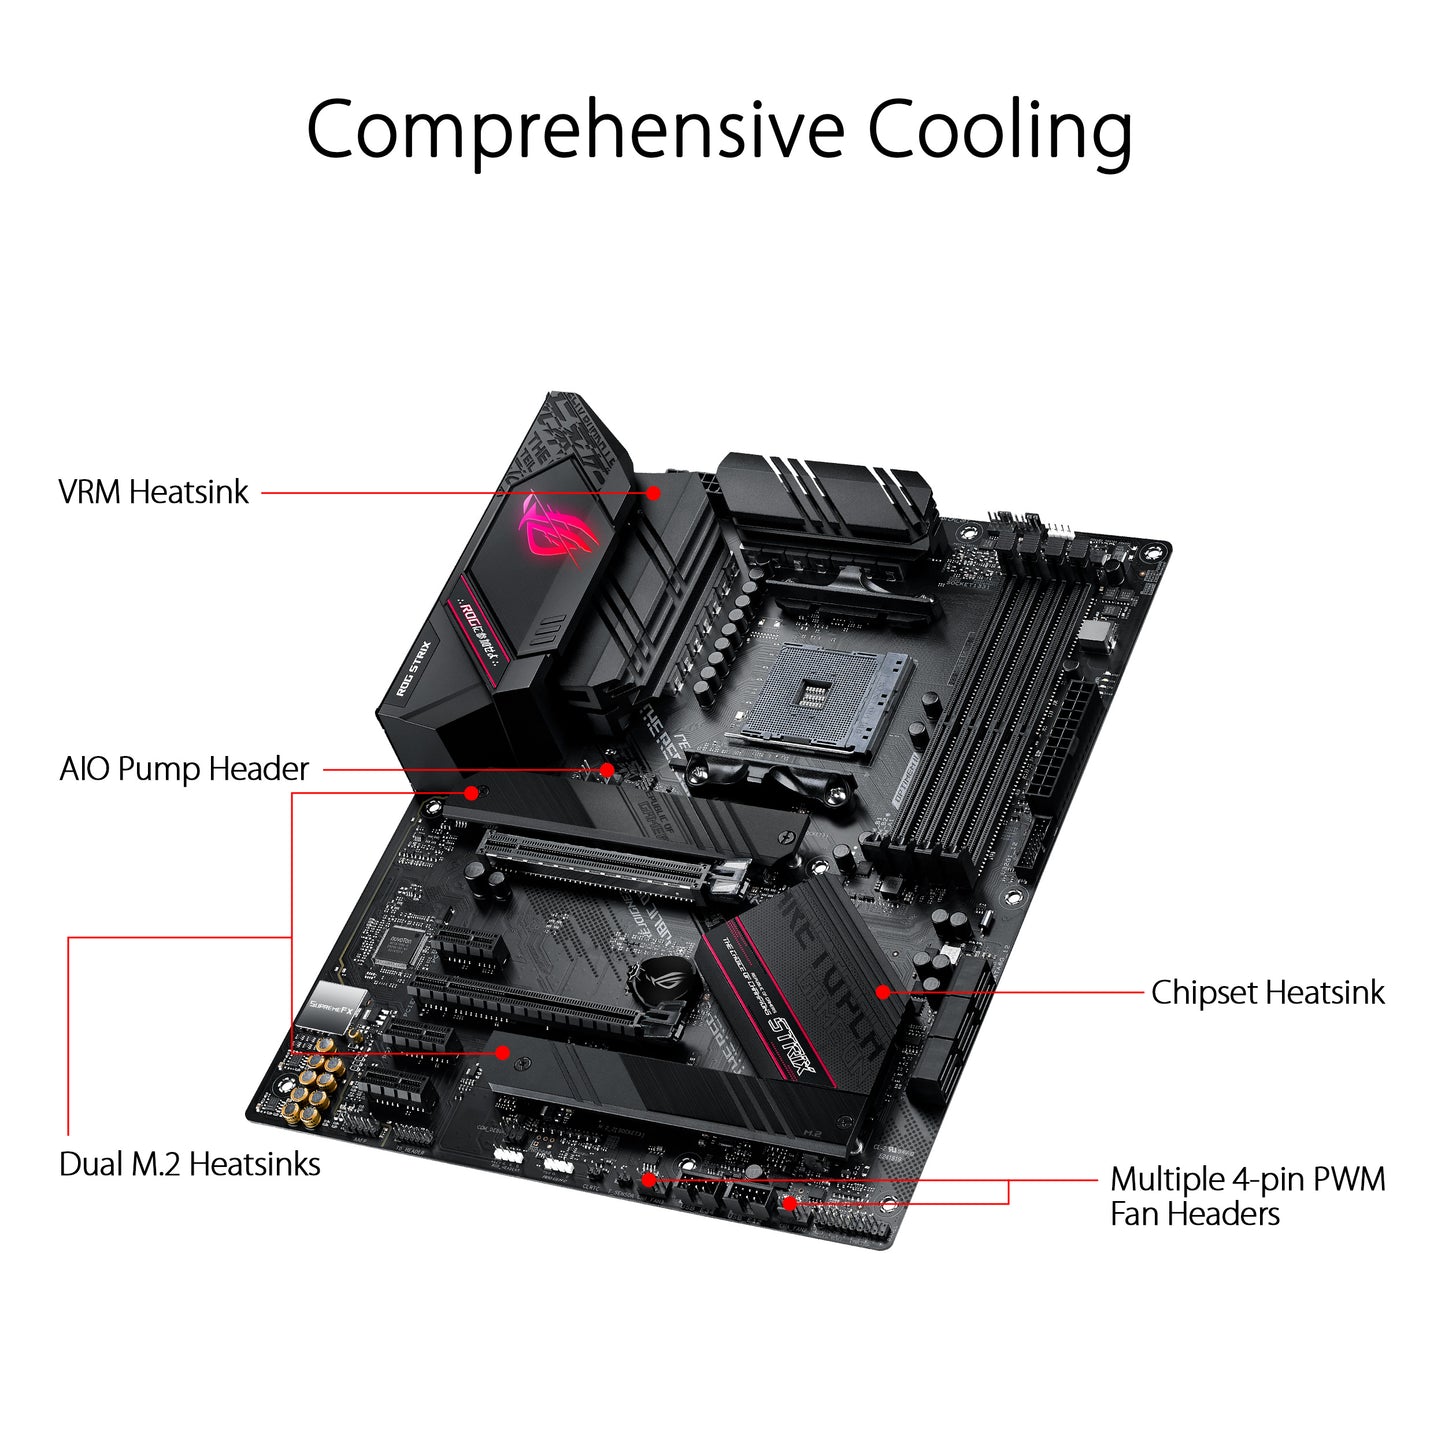 ASUS ROG STRIX B550-F AMD A4 ATX गेमिंग मदरबोर्ड PCIe 4.0 और AI नेटवर्किंग के साथ